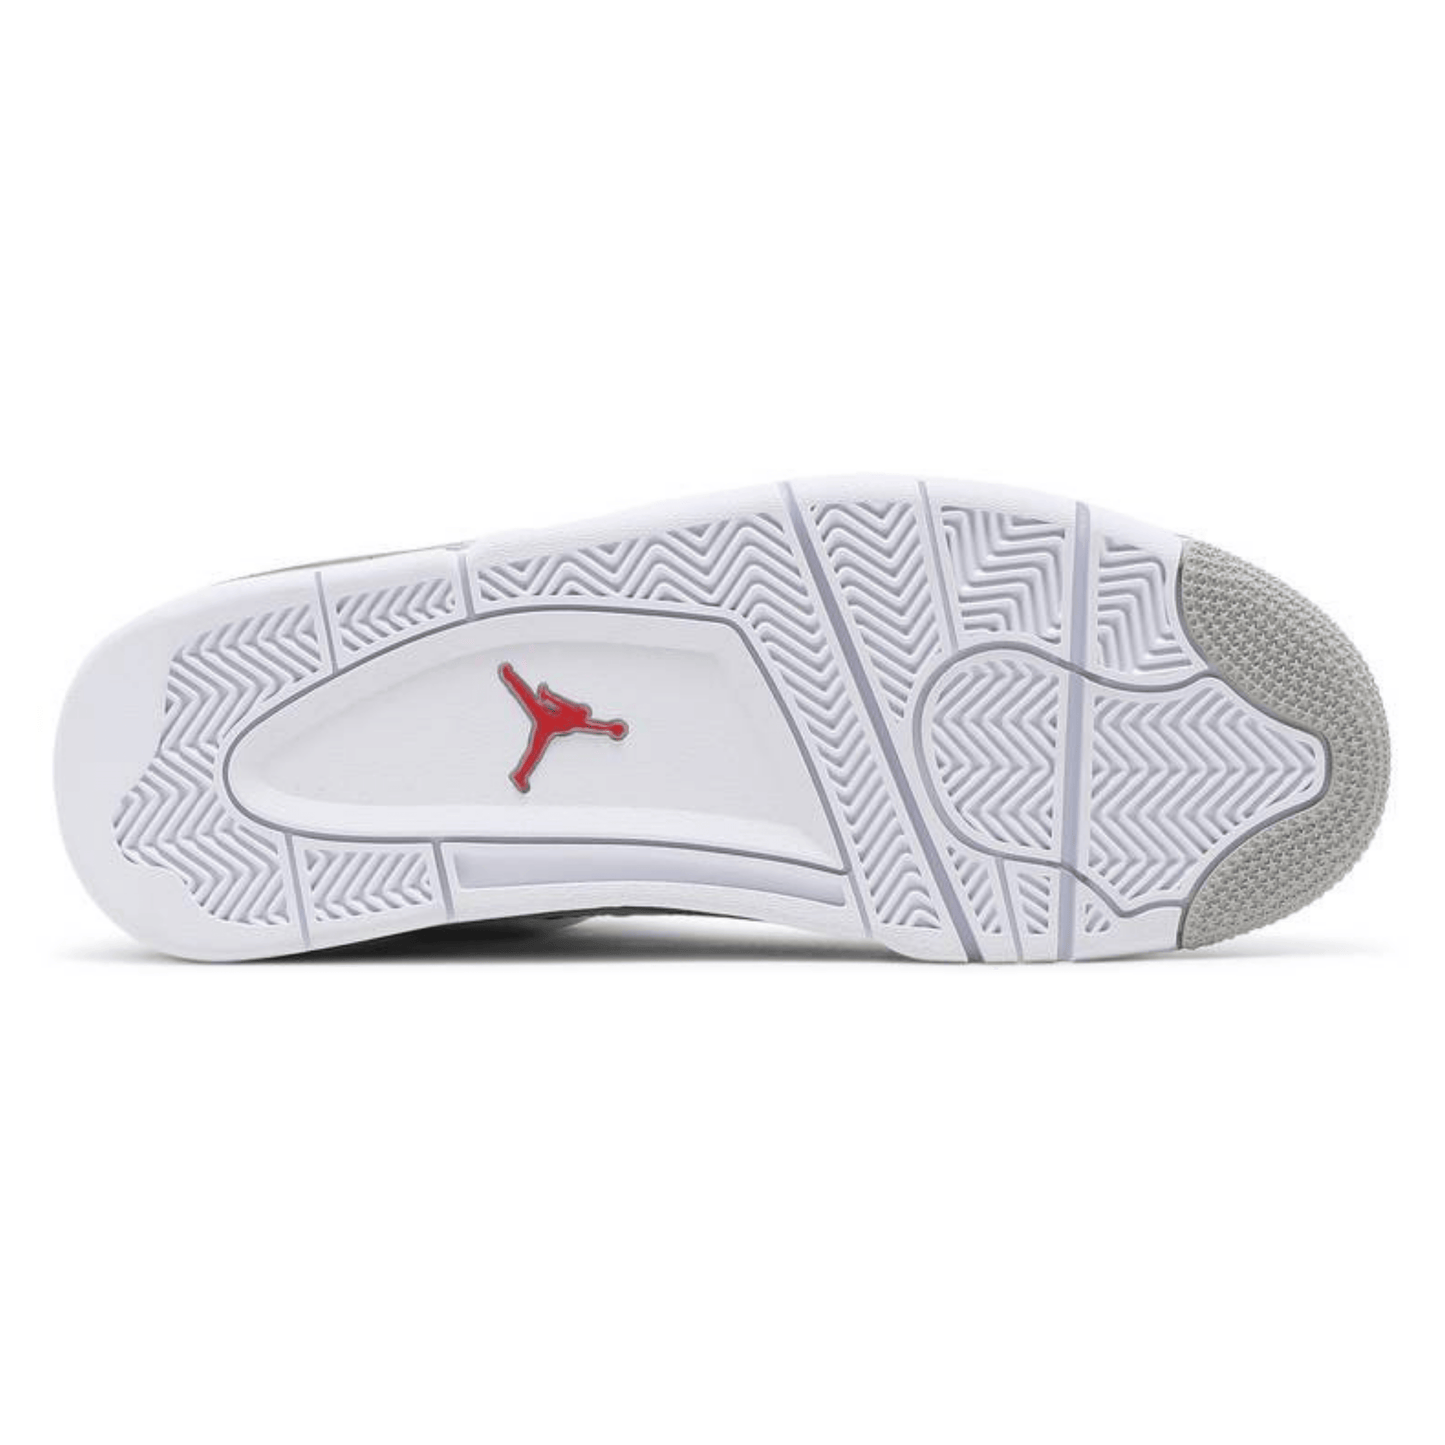 Air Jordan 4 Retro ‘White Oreo’ - FRESNEAKERS